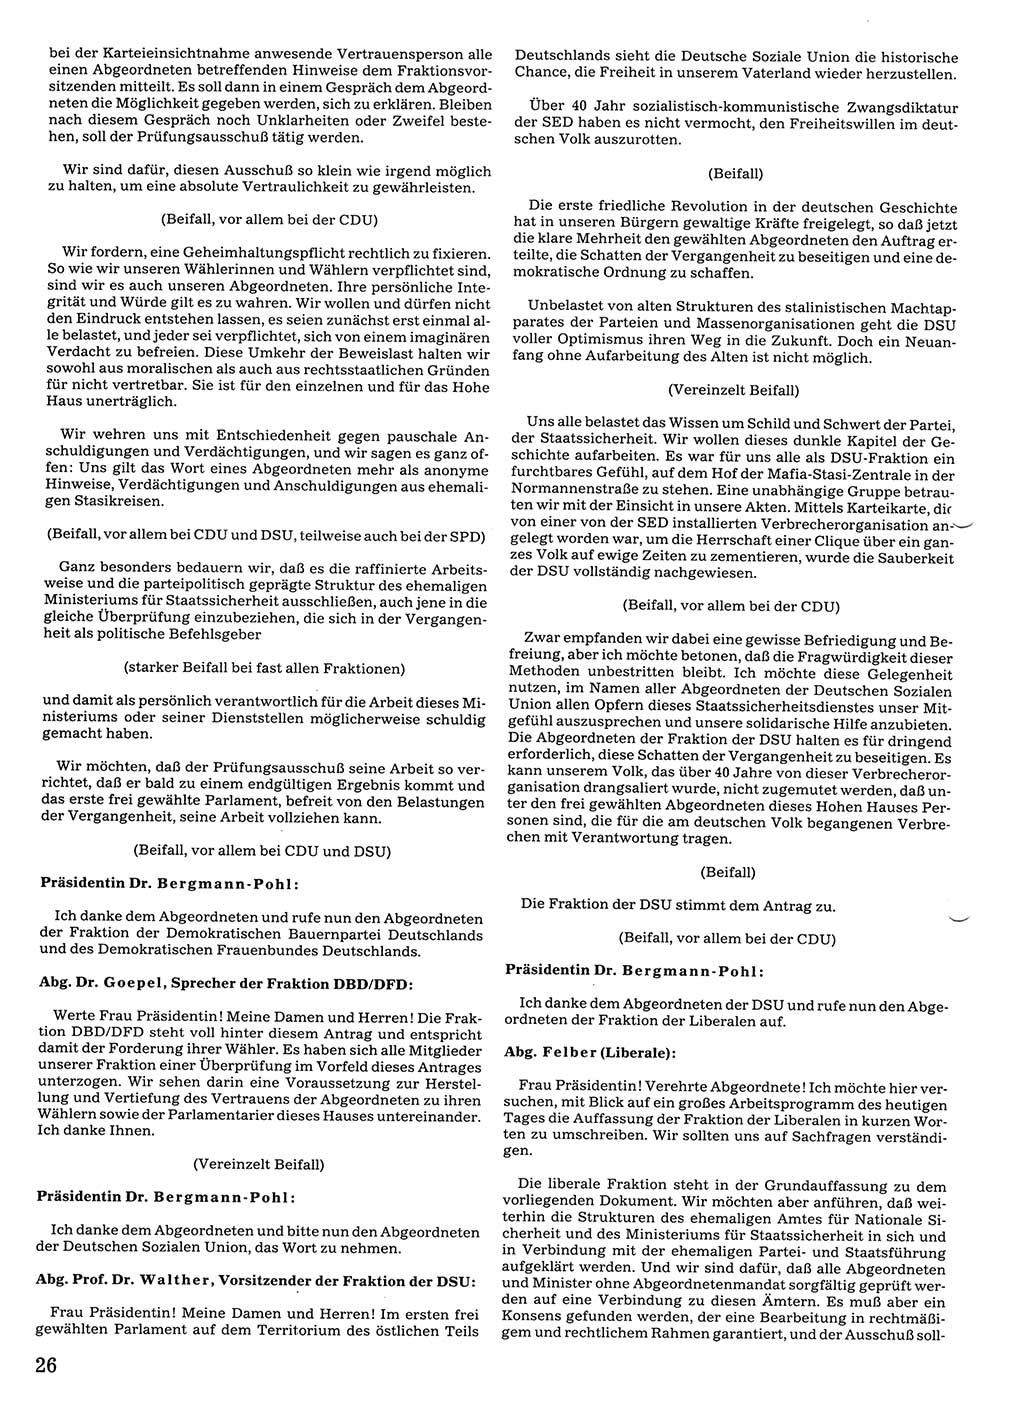 Tagungen der Volkskammer (VK) der Deutschen Demokratischen Republik (DDR), 10. Wahlperiode 1990, Seite 26 (VK. DDR 10. WP. 1990, Prot. Tg. 1-38, 5.4.-2.10.1990, S. 26)